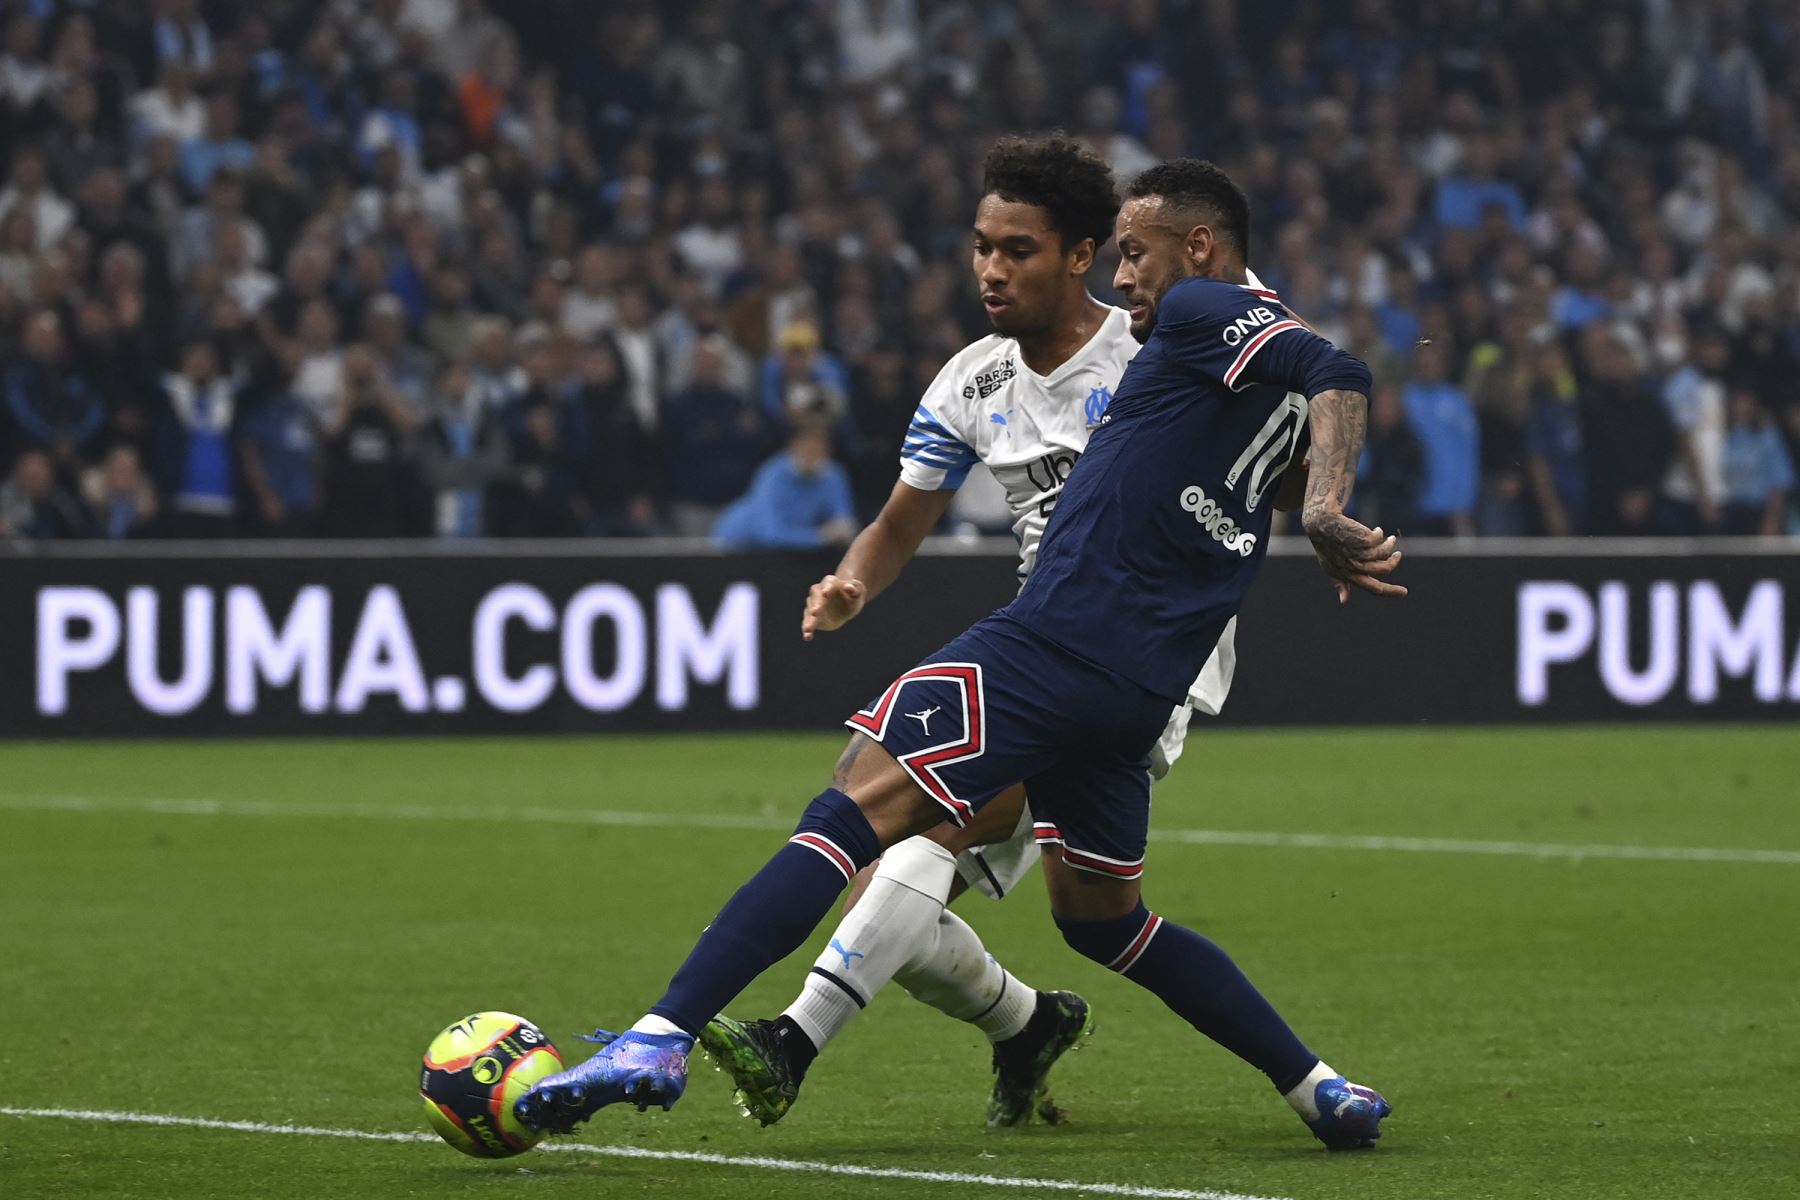 El delantero brasileño del Paris Saint-Germain, Neymar, lucha por el balón con el defensor francés del Marsella Boubacar Kamara durante el partido de la Liga francesa. Foto: AFP